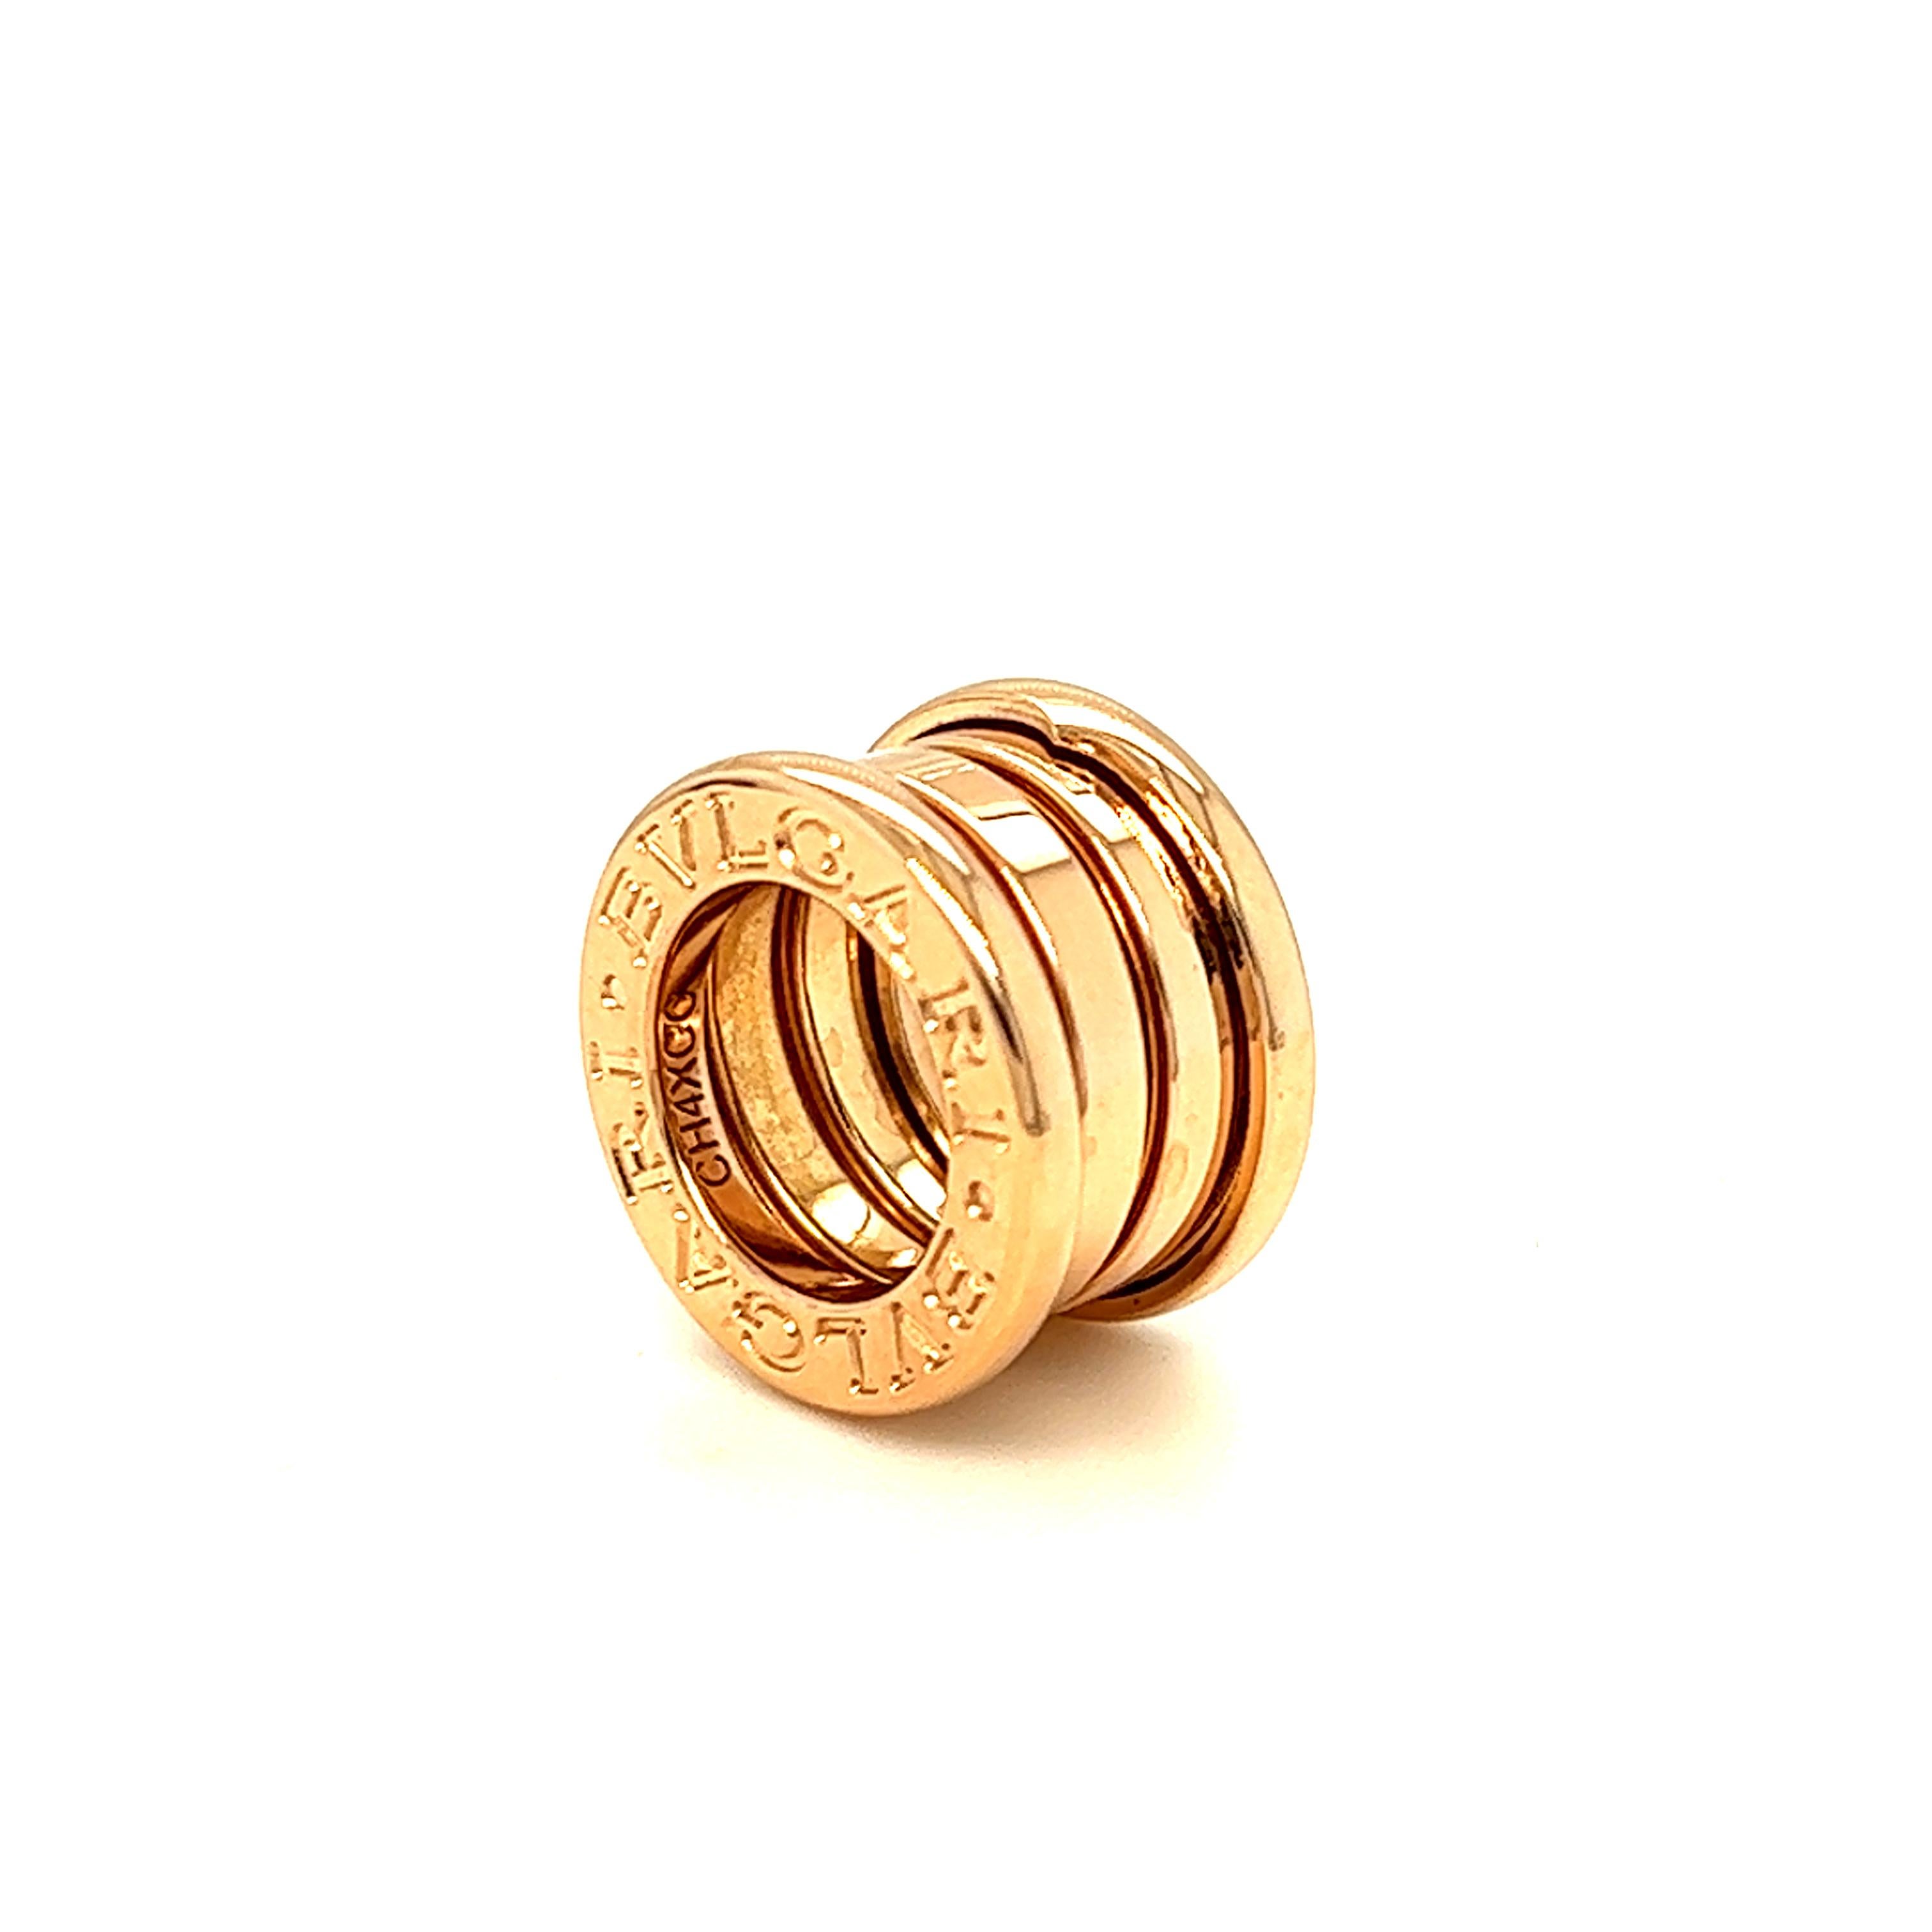 Bvlgari pendentif minimaliste mais classe et élégant de la collection B.Zero 1. Réalisé en or rose 18 carats, il arbore l'anneau emblématique en guise de pendentif. La pureté de sa spirale distinctive est une métaphore de l'harmonie entre le passé,